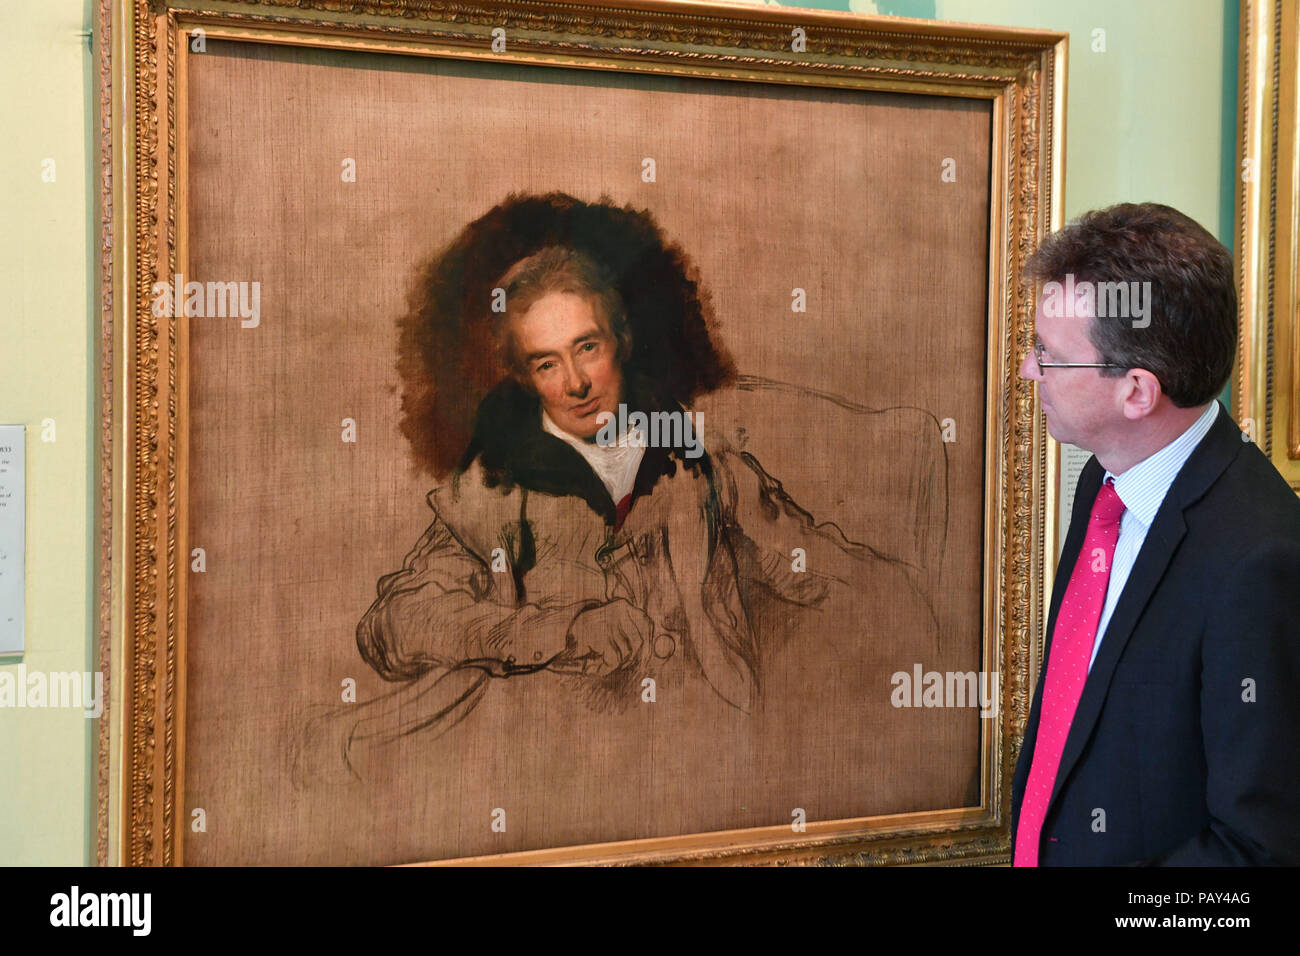 Il segretario alla cultura Jeremy Wright durante il lancio del nuovo progetto "Coming Home" alla National Portrait Gallery di Londra, che vedrà il ritratto di Sir Thomas Lawrence di William Wilberforce, attivista antislavery, esposto per la prima volta nella sua città natale di Hull. Foto Stock